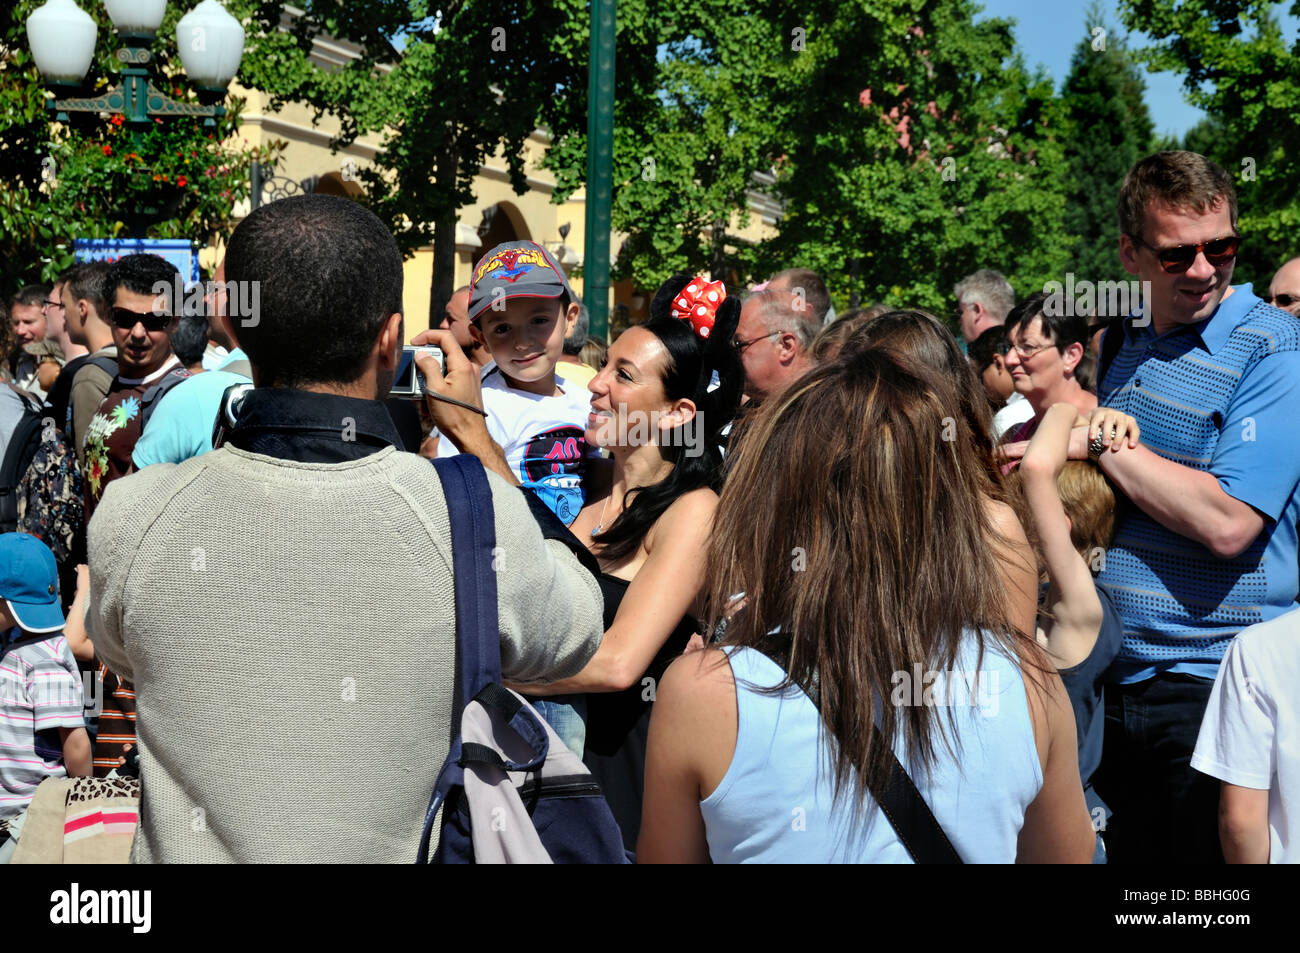 Paris France, Parcs à thème, personnes visitant Disneyland entrée Paris, Père prenant des photos de famille, vacances, vacances Banque D'Images